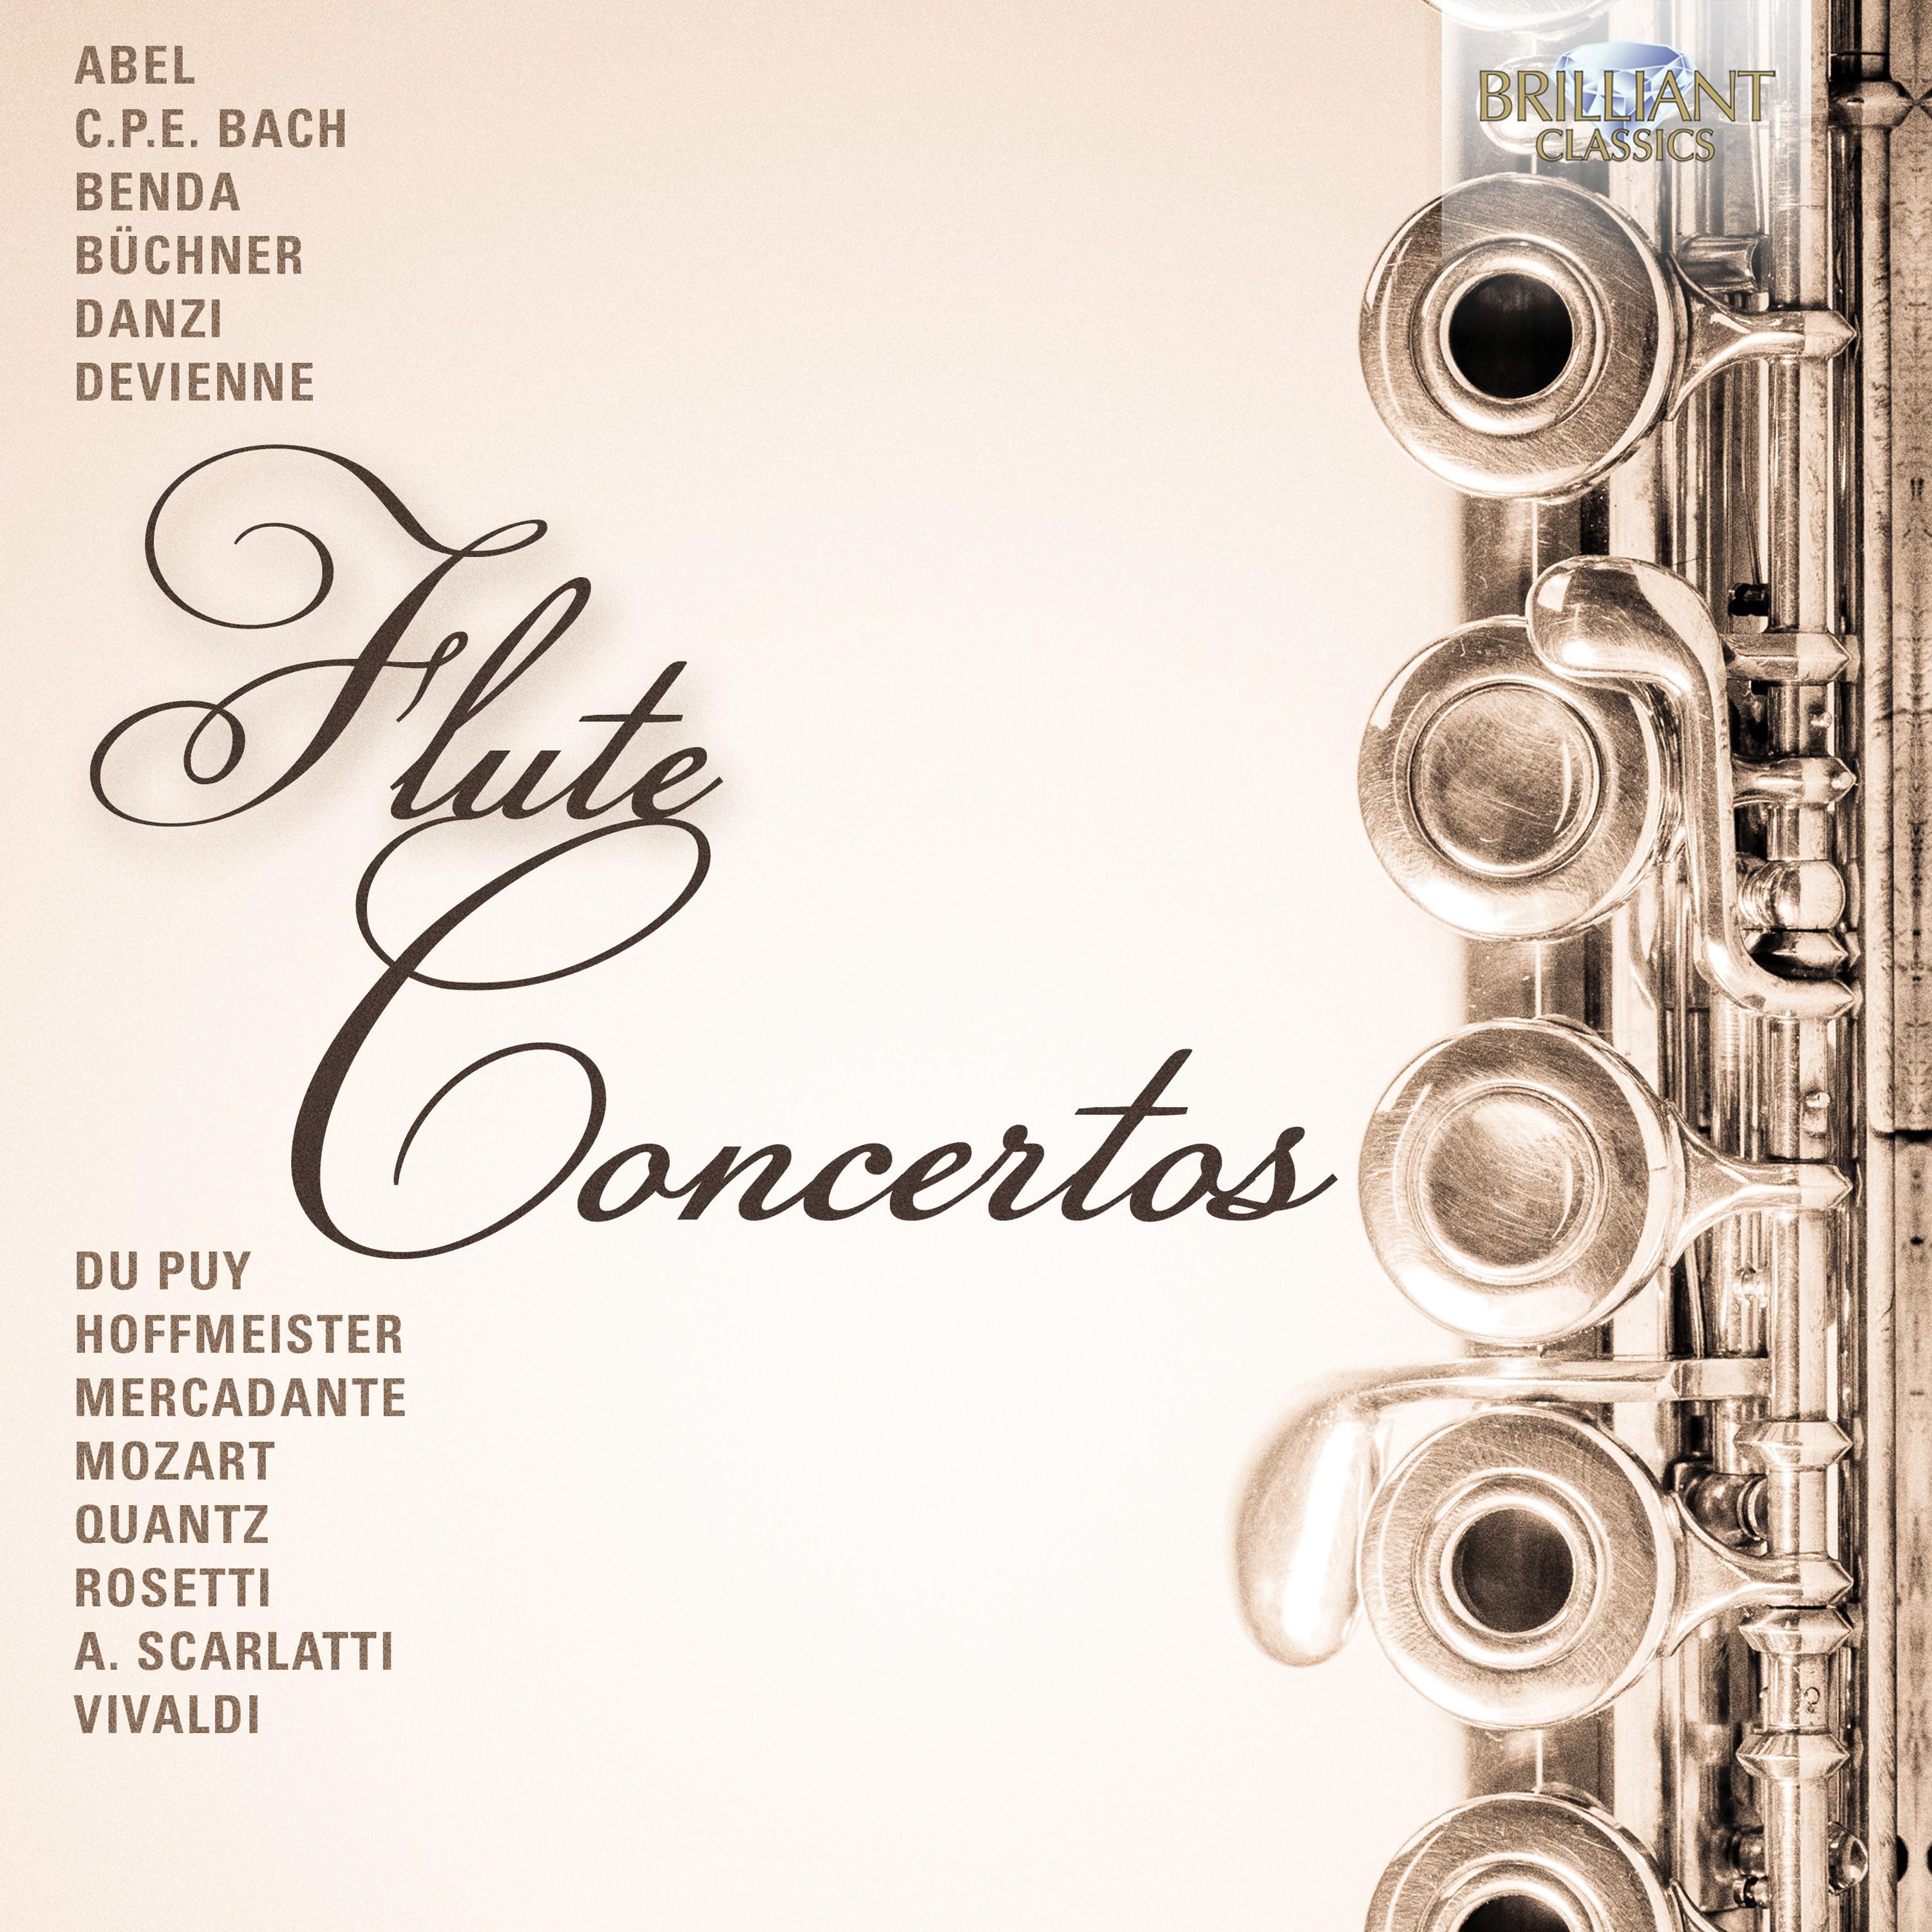 Concerto in E-Flat Major, Wq. 165: III. Allegro ma non troppo